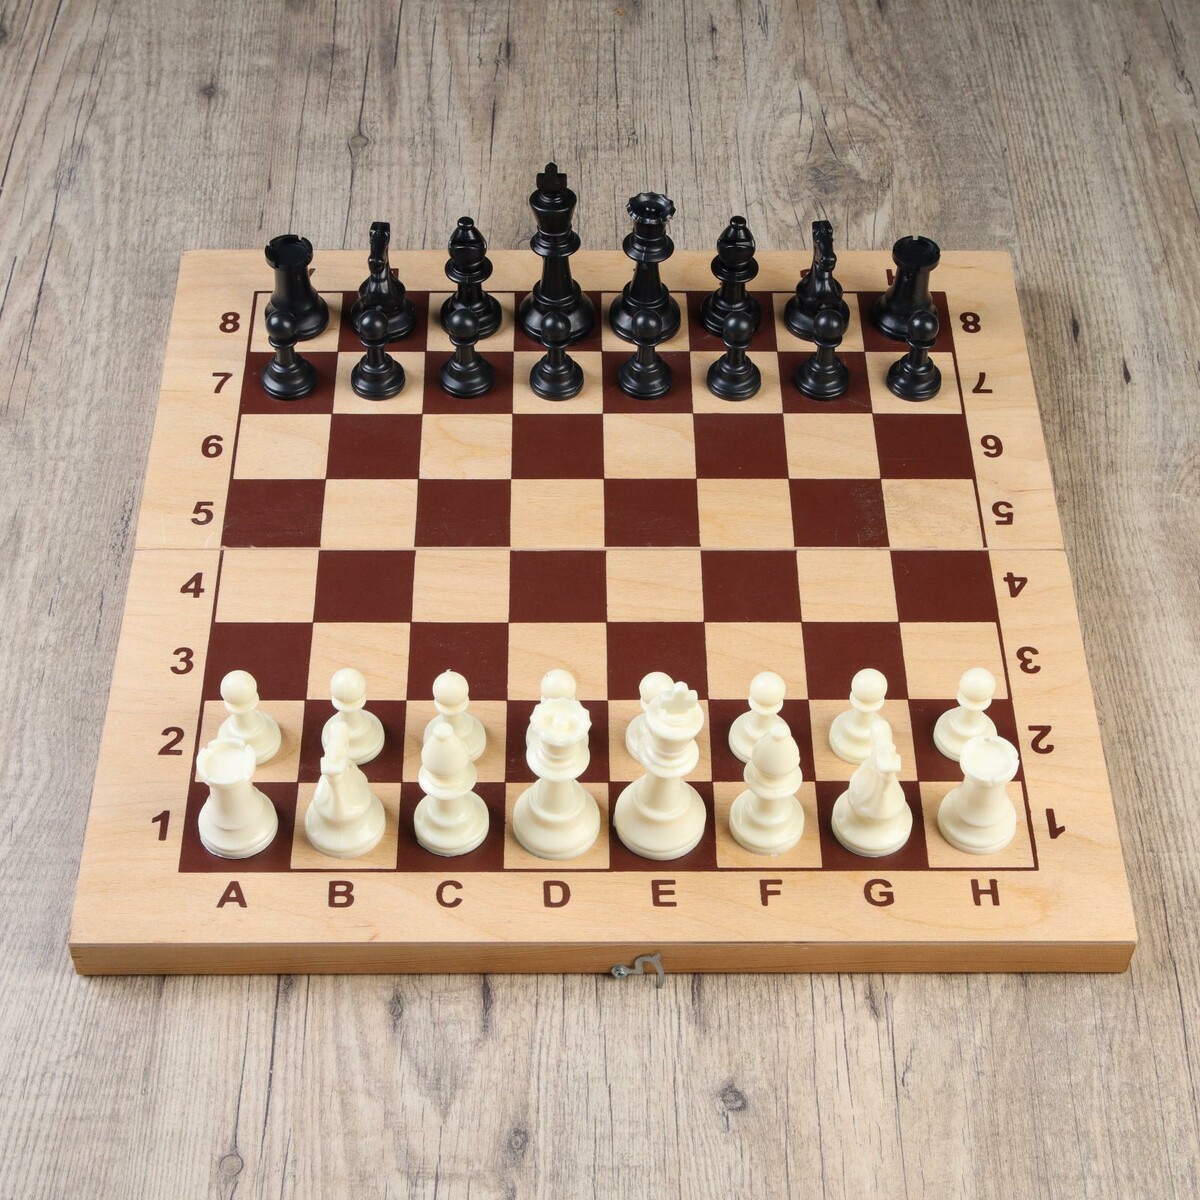 Шахматные фигуры, пластик, король h-9.5 см, пешка h-4.5 см король сусликов